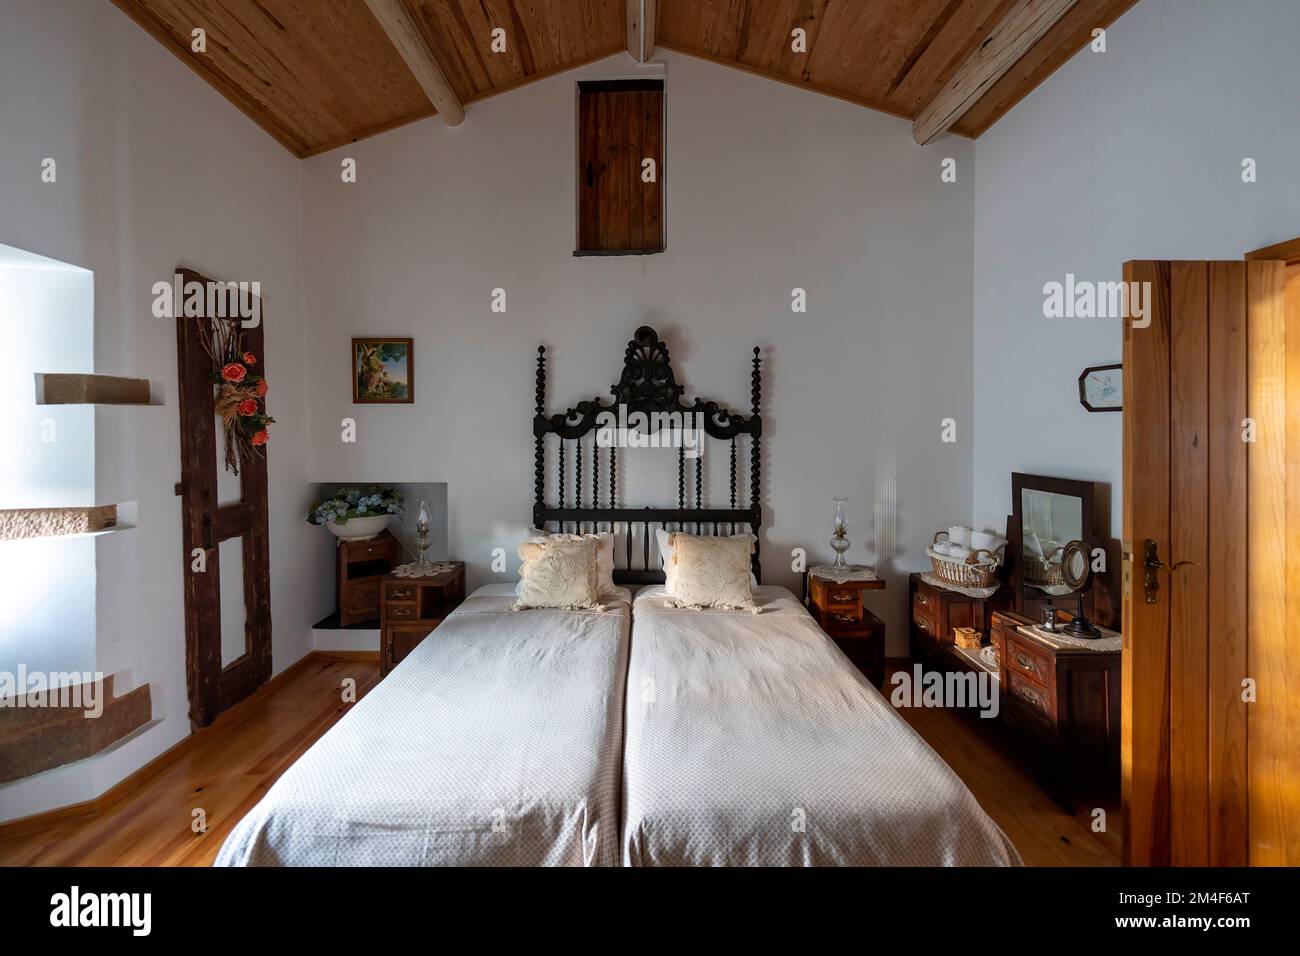 Camera da letto rustica con due letti separati Foto Stock